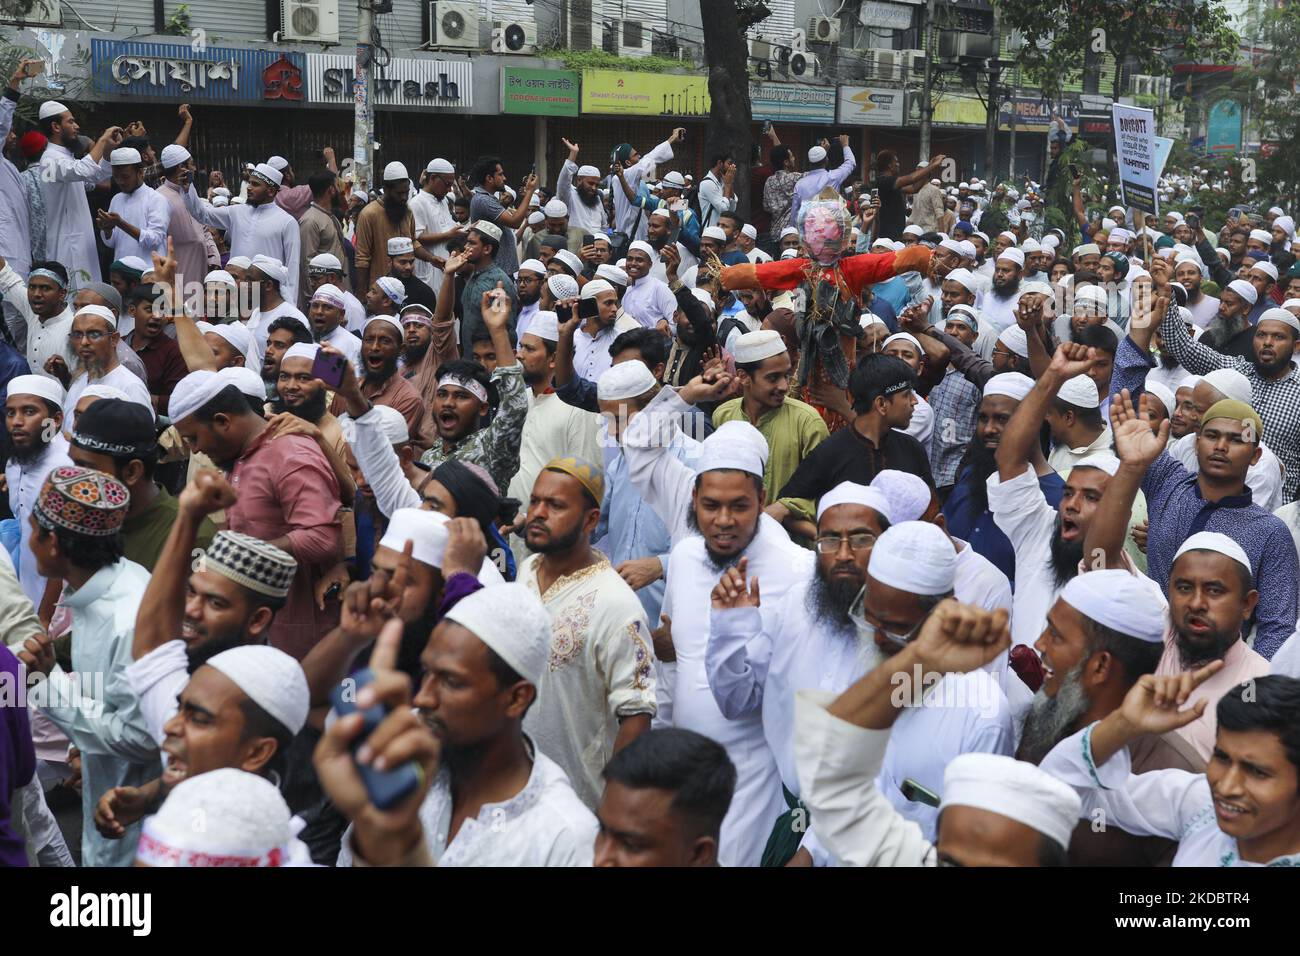 Manifestation de dévot musulmane bangladaise contre le prophète insultant Muhammad par le chef indien du BJP, après un front de jummah de la mosquée Baitul Mukarram à Dhaka, au Bangladesh, sur 10 juin 2022. (Photo de Kazi Salahuddin Razu/NurPhoto) Banque D'Images